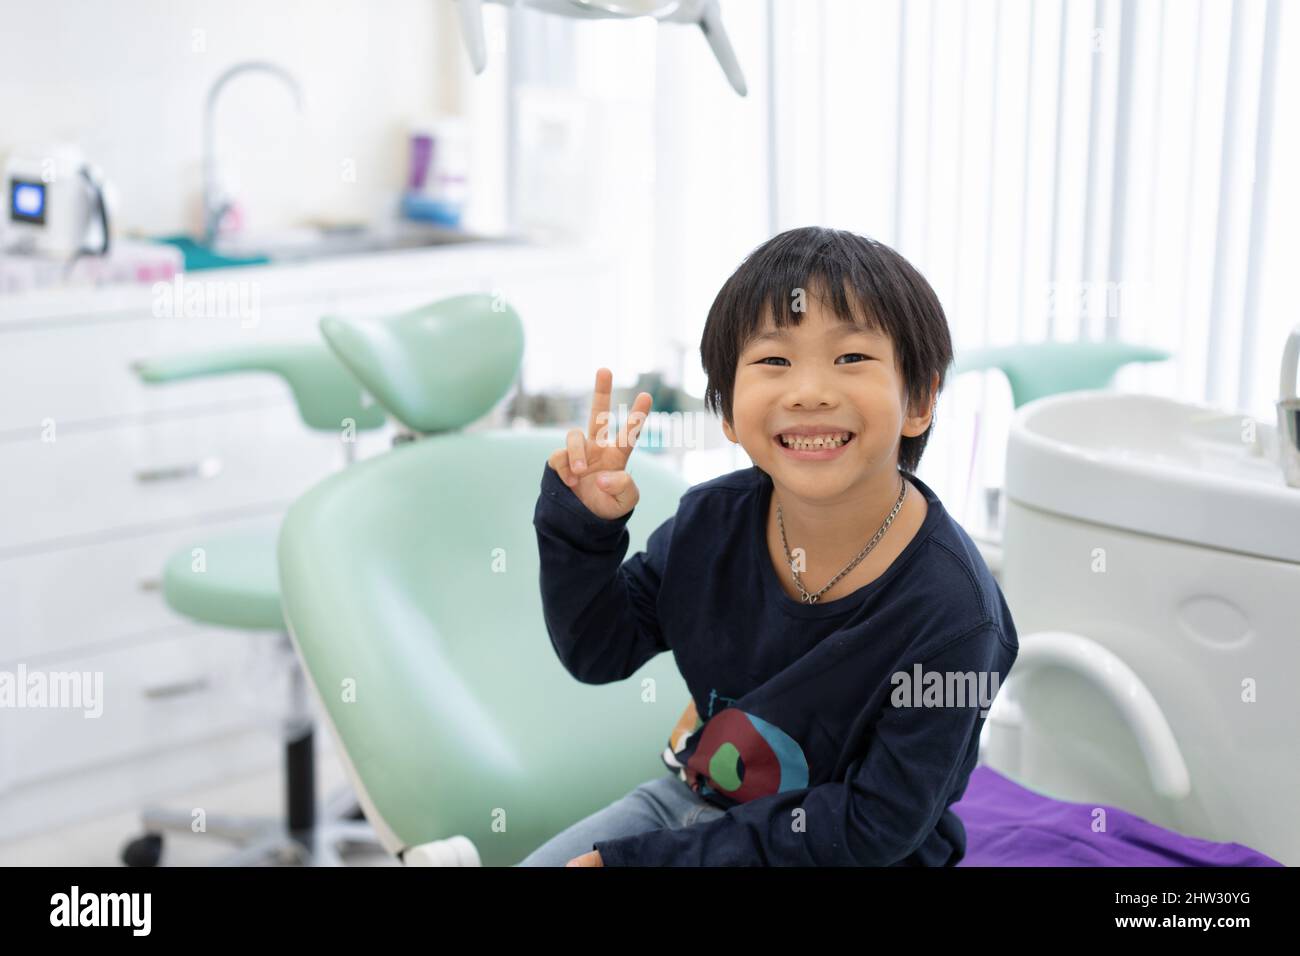 Le garçon asiatique se sent heureux de s'asseoir sur la chaise dentaire dans la clinique dentaire Banque D'Images